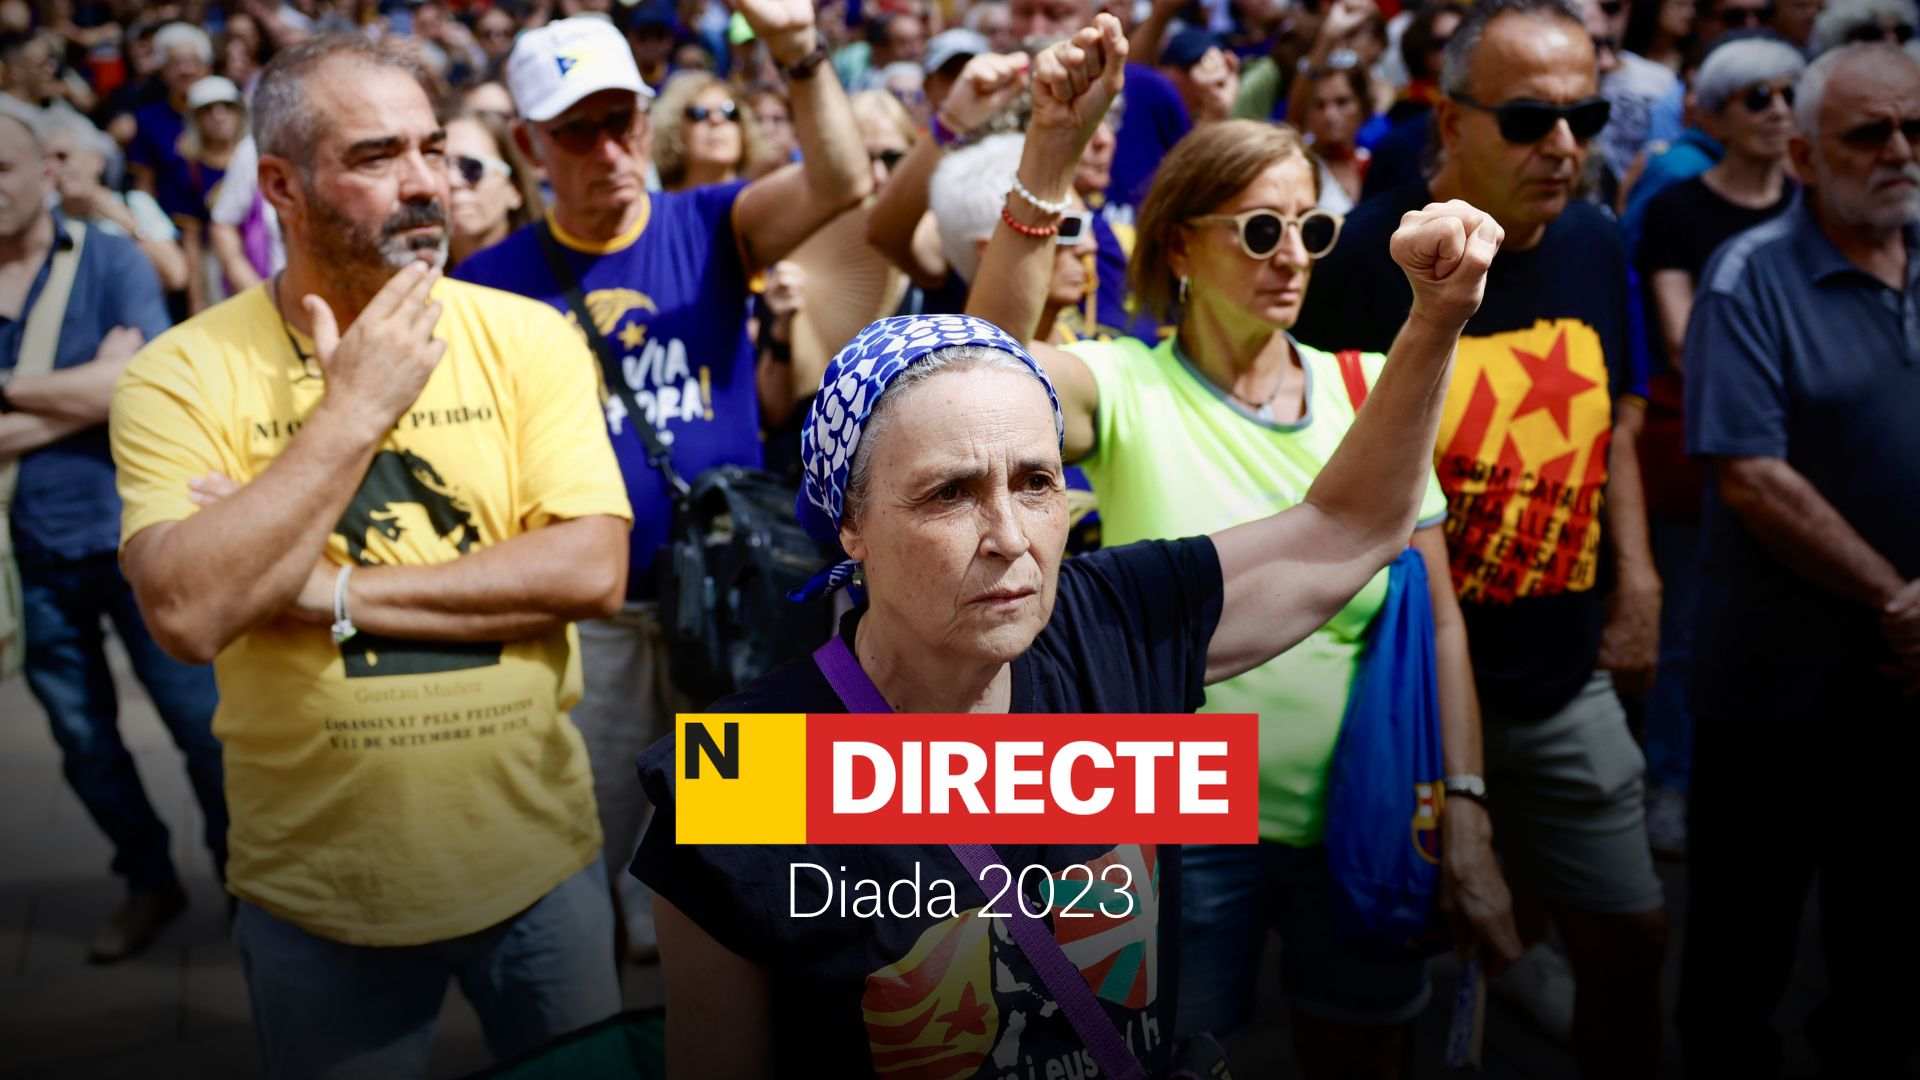 Diada de Catalunya 2023, DIRECTO | Última hora de la manifestación del 11 de septiembre